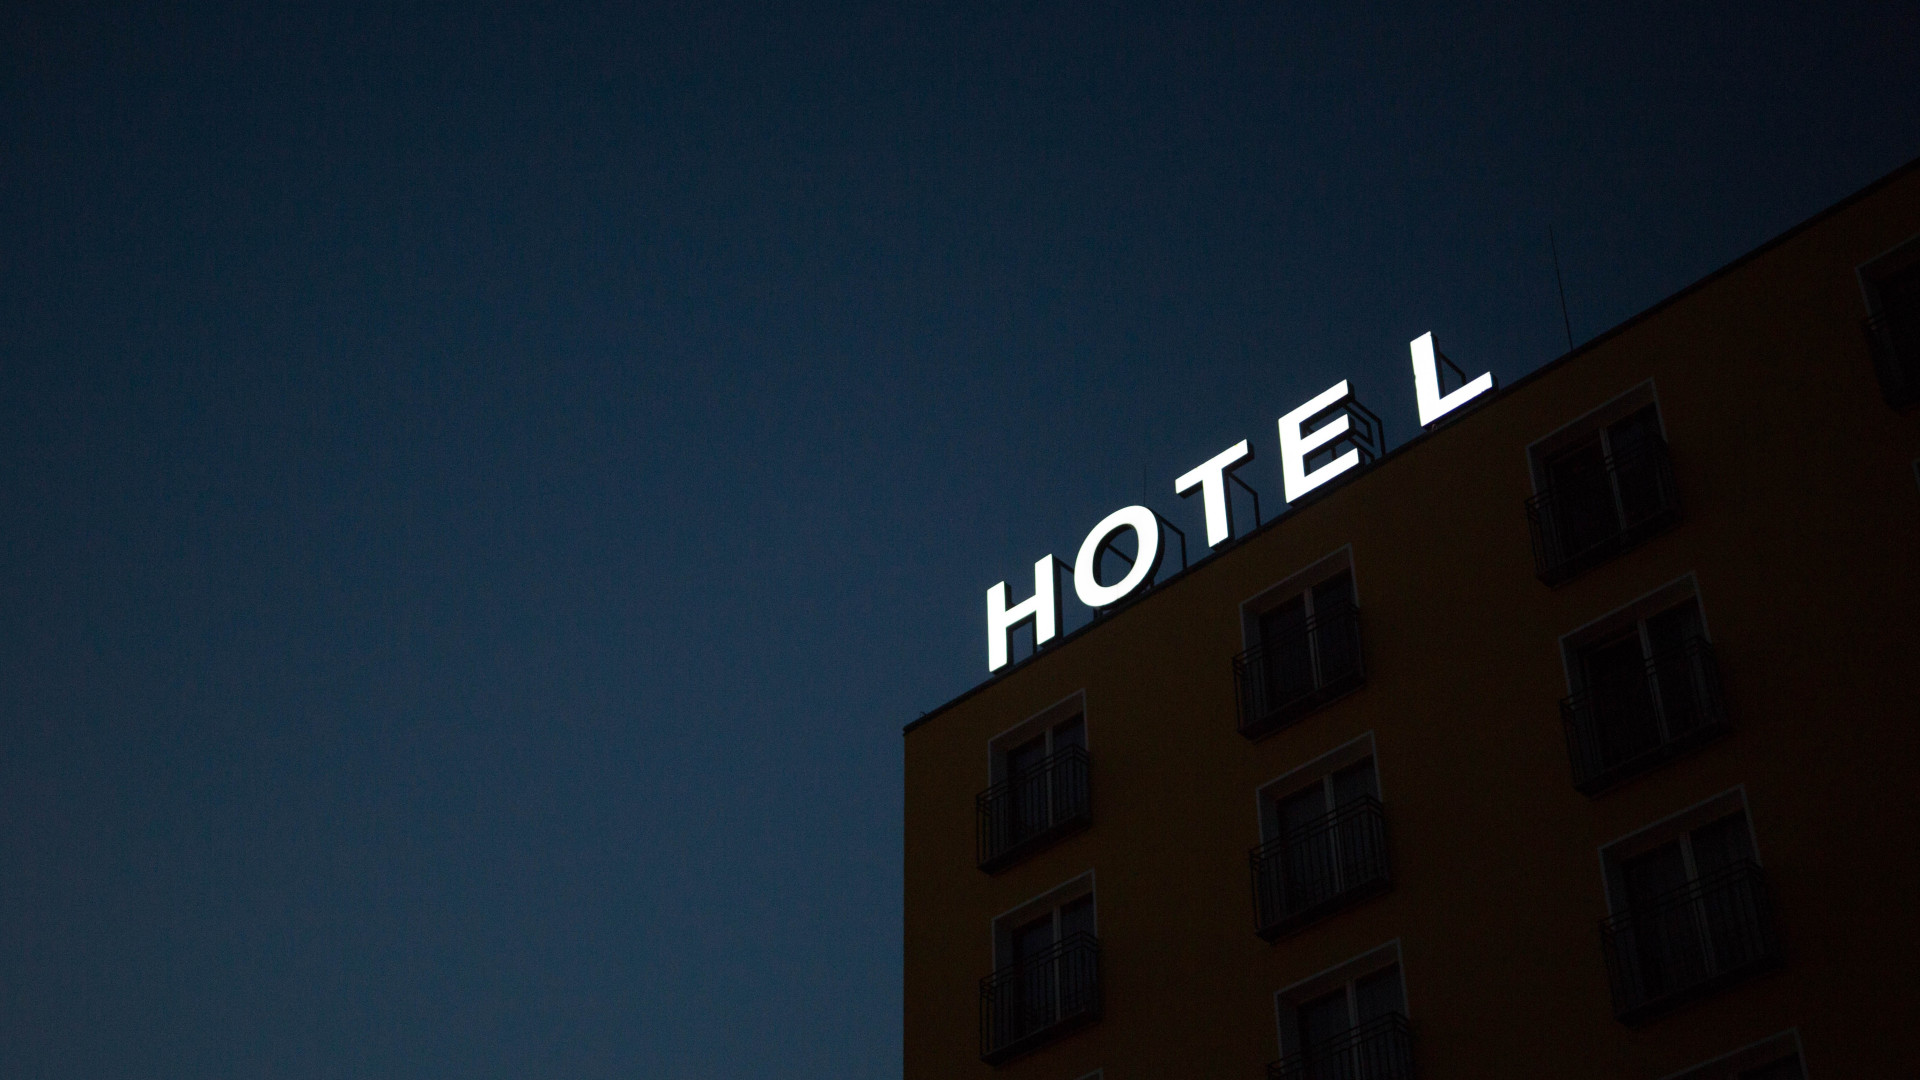 Comment les experts en punaises de lit peuvent désinfecter efficacement votre hôtel ?